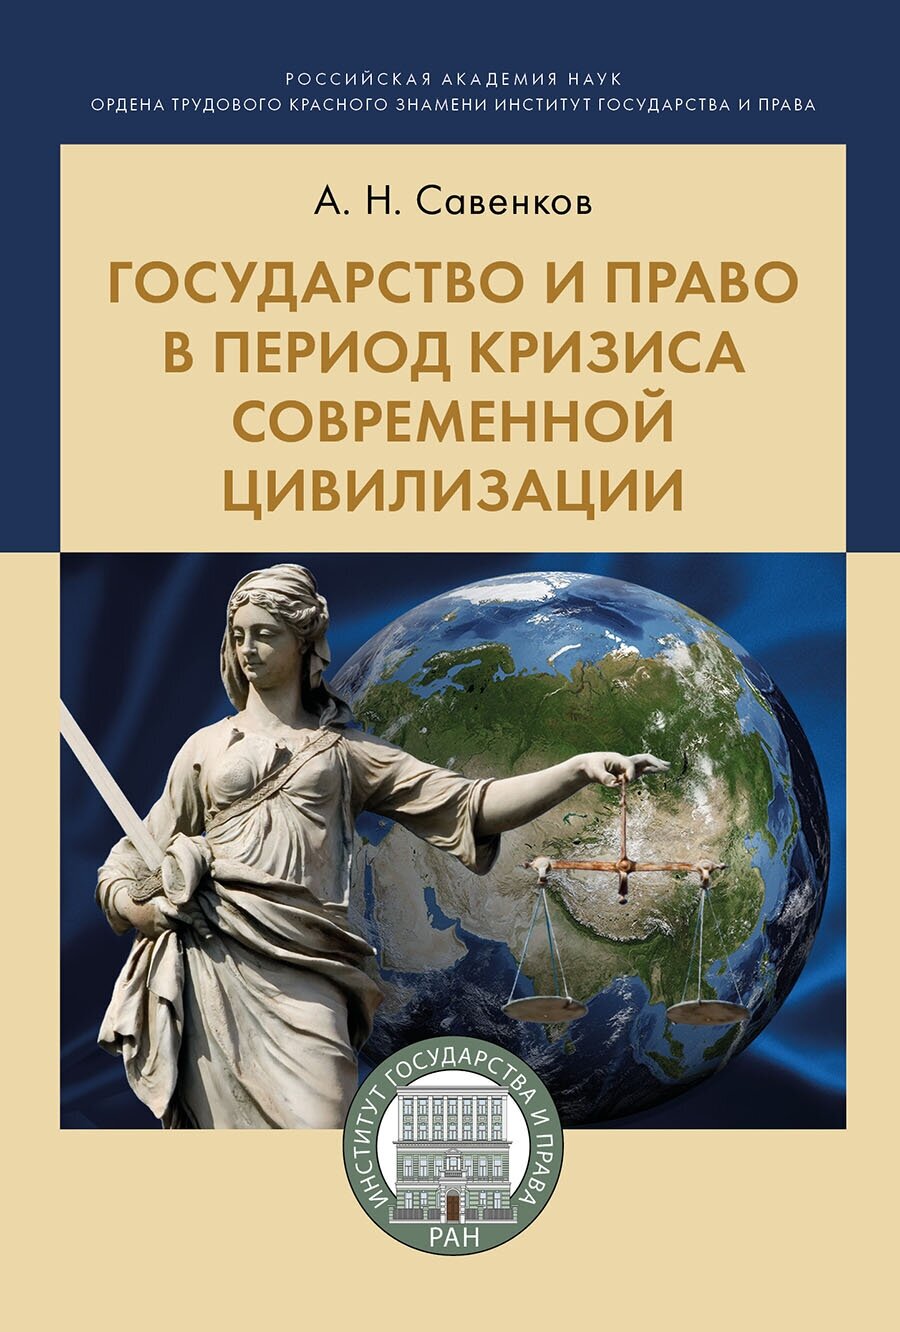 Савенков А. Н. "Государство и право в период кризиса современной цивилизации. Монография"